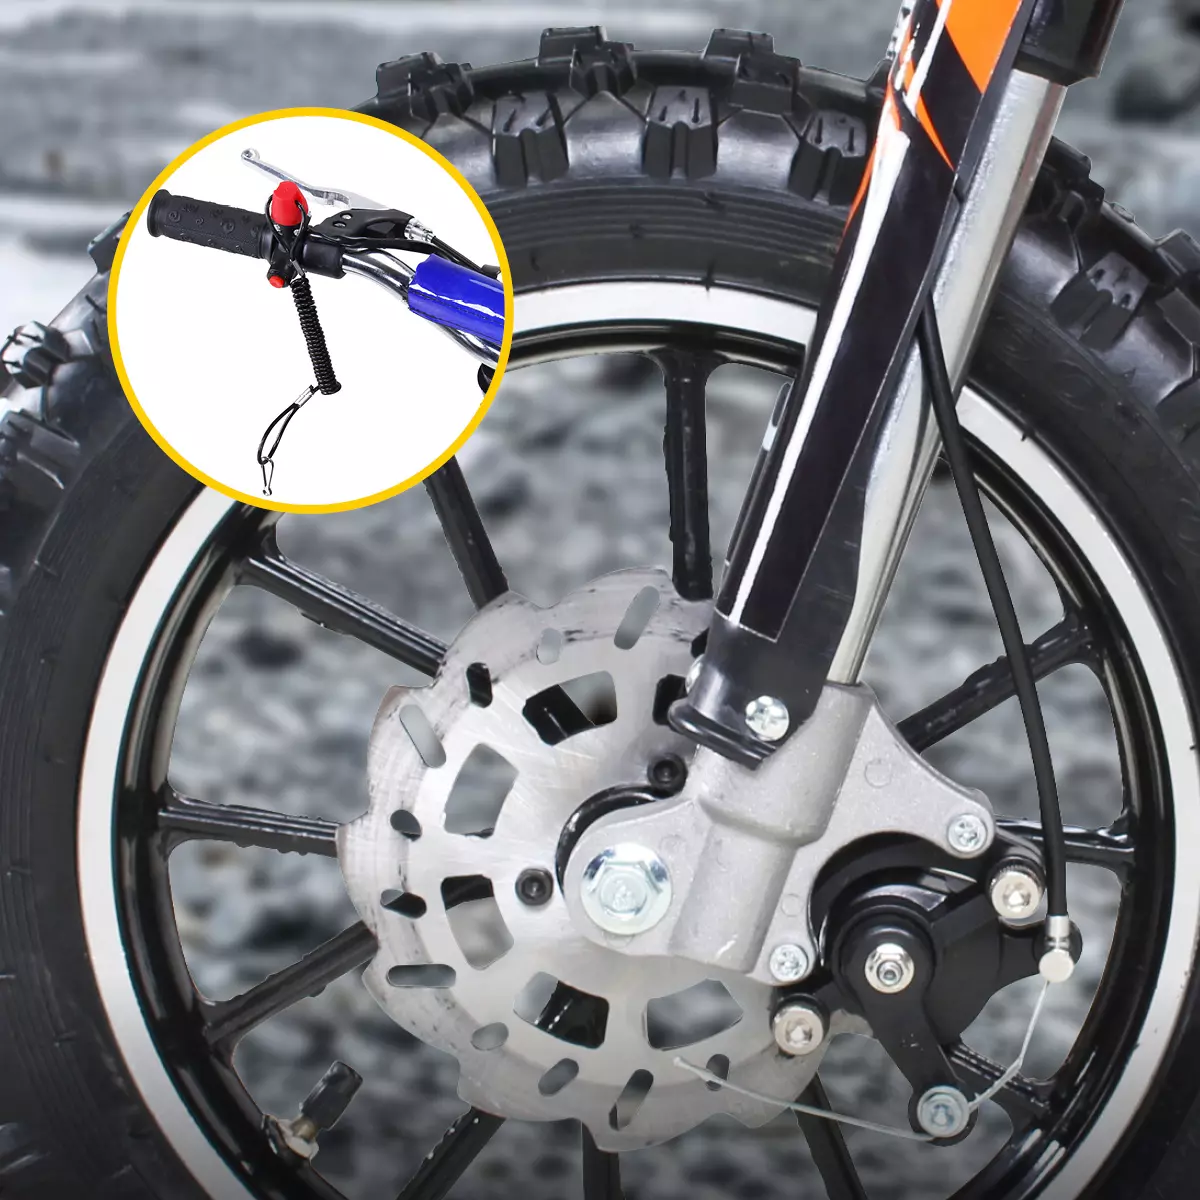 Vergrößerte Bremse am Reifen des Kinder-Motocross-Bikes, Not-Aus-Leine am Lenker